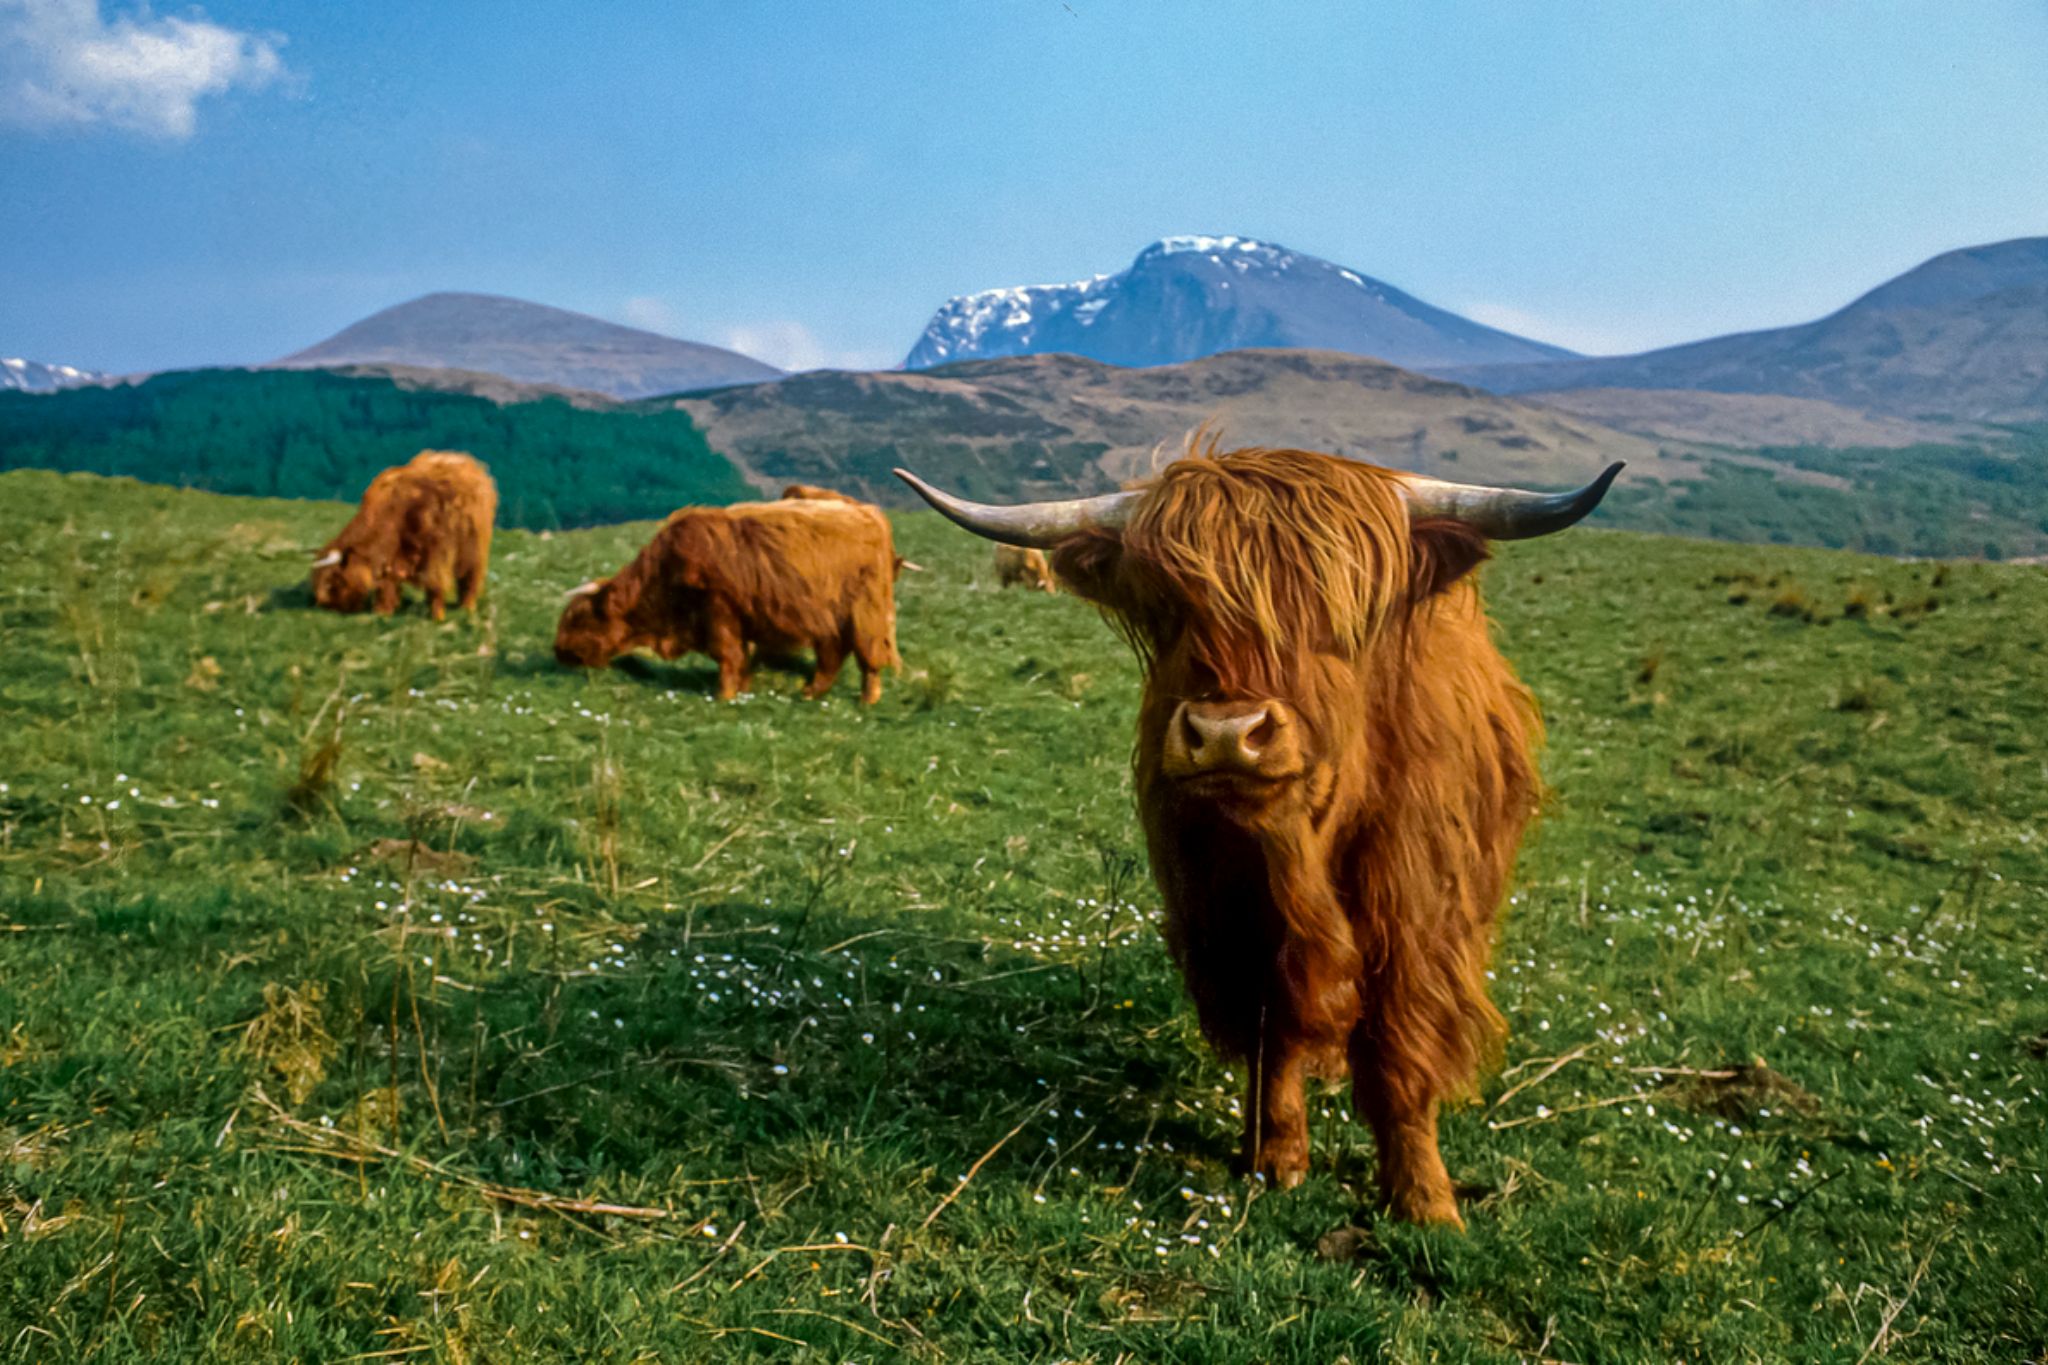 scottish highland cattle